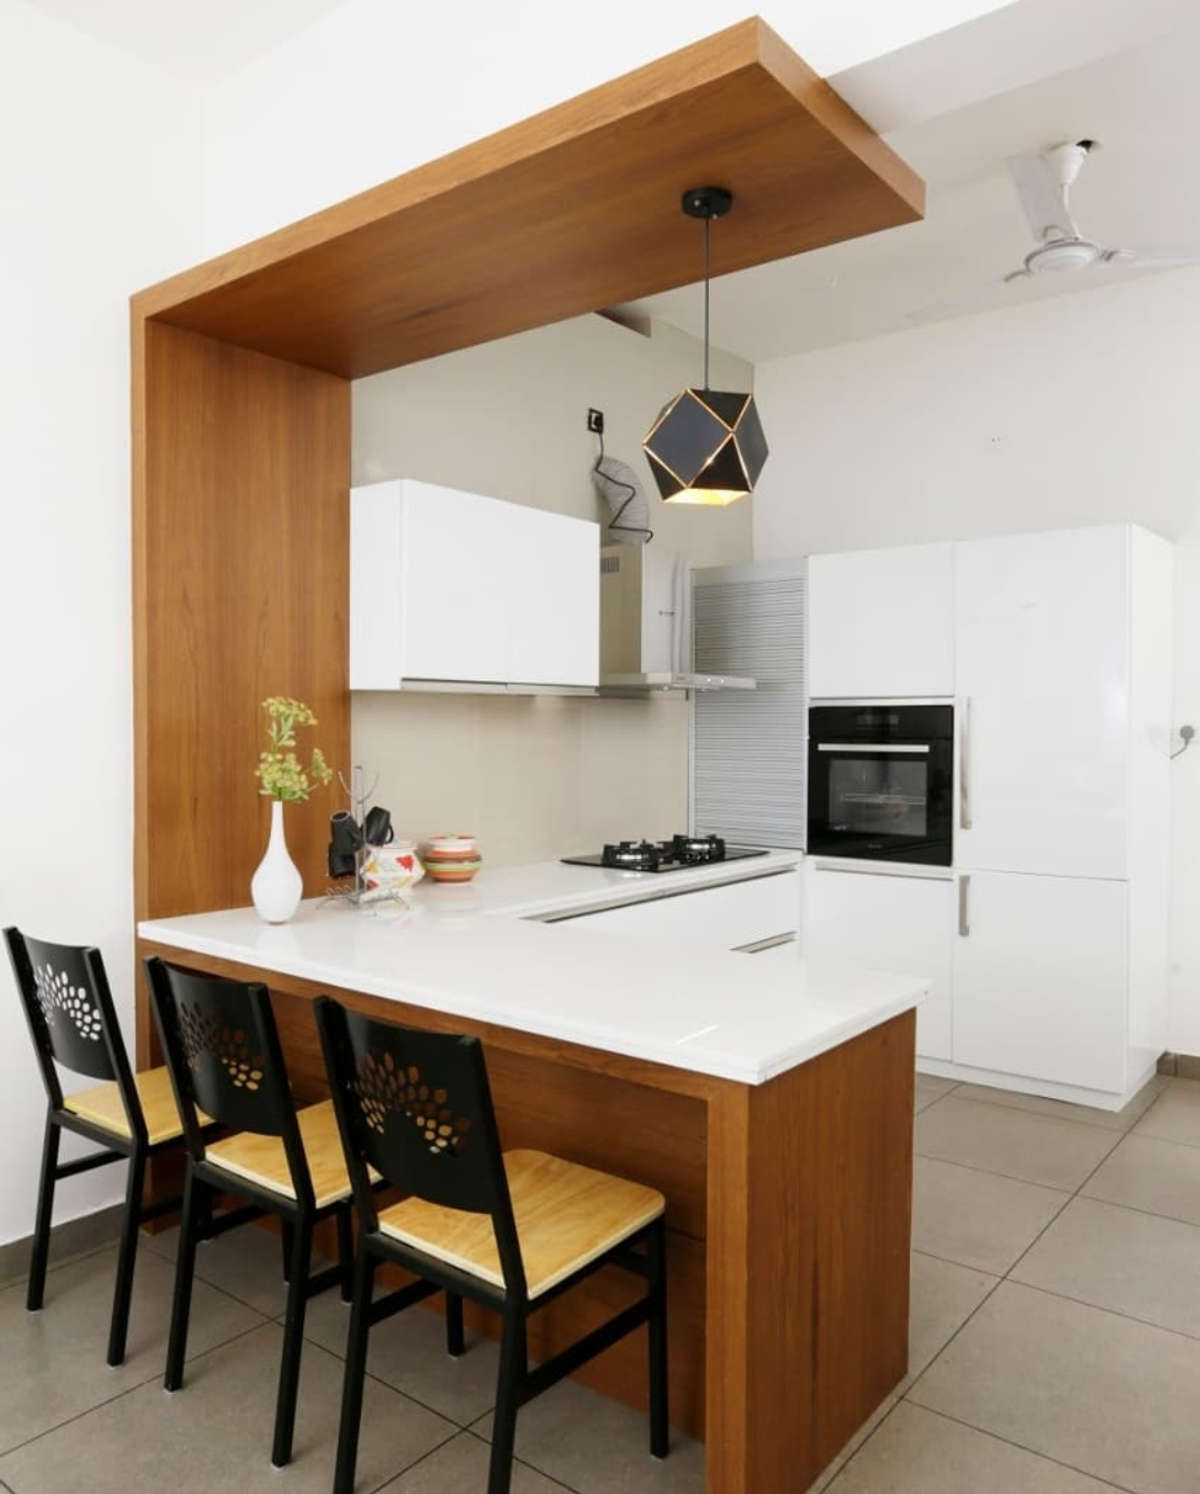 Kitchen, Storage, Furniture Designs by Interior Designer interior ...